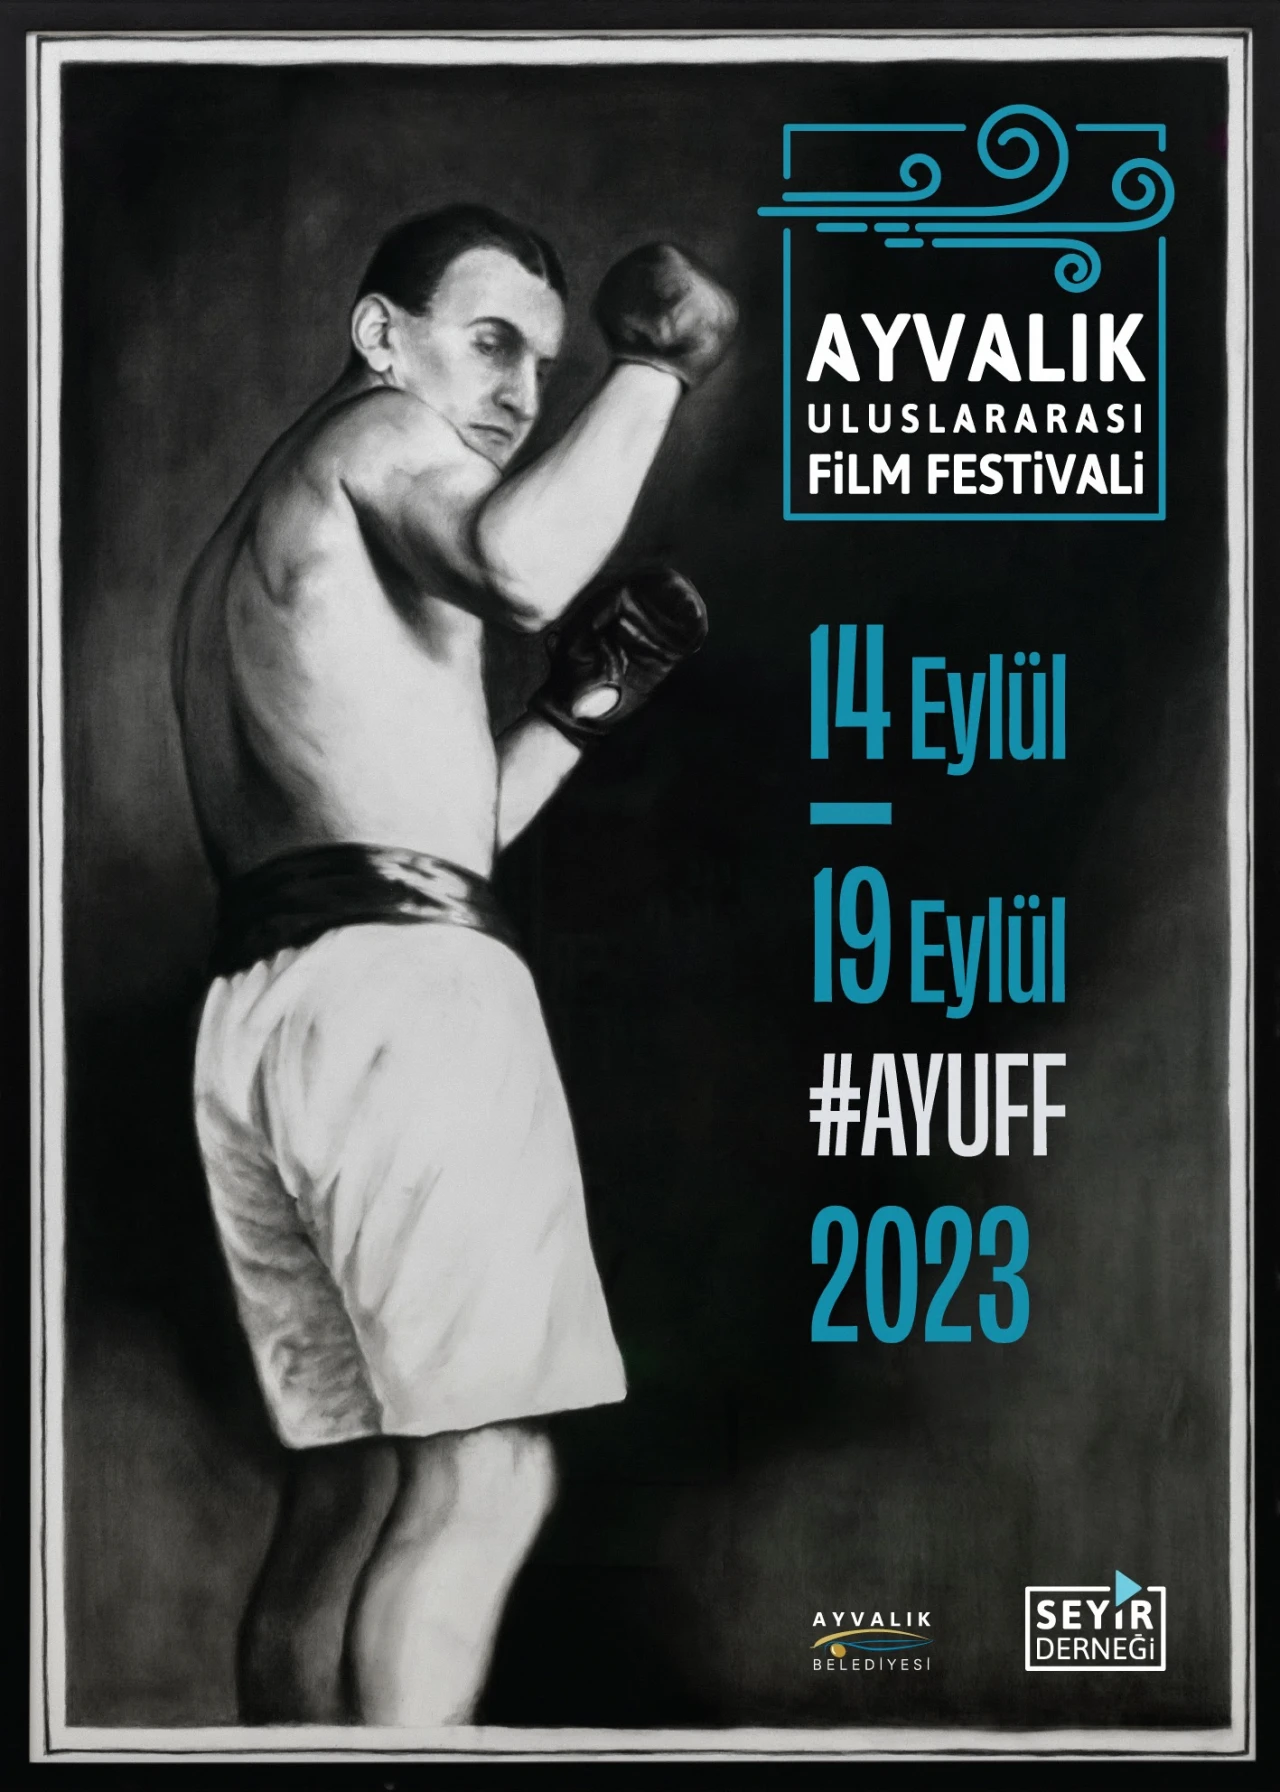 Ayvalık Uluslararası Film Festivali, 14 Eylül'de başlıyor